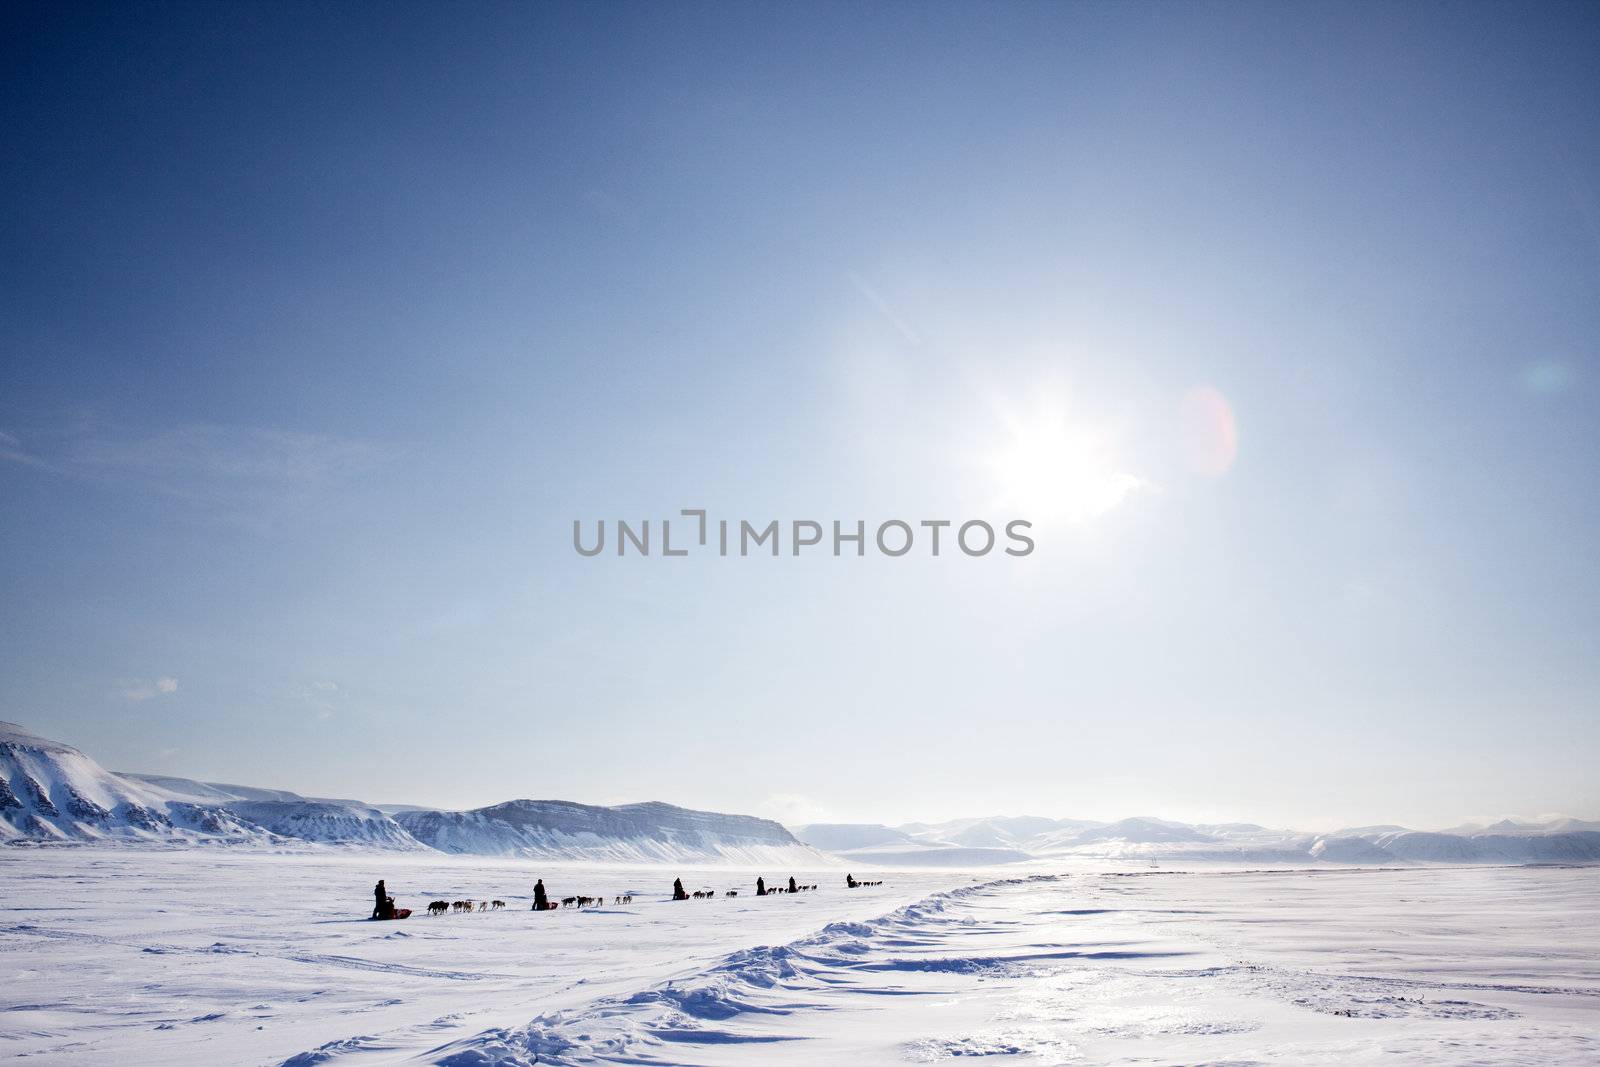 A number of dogsleds on a barren winter landscape